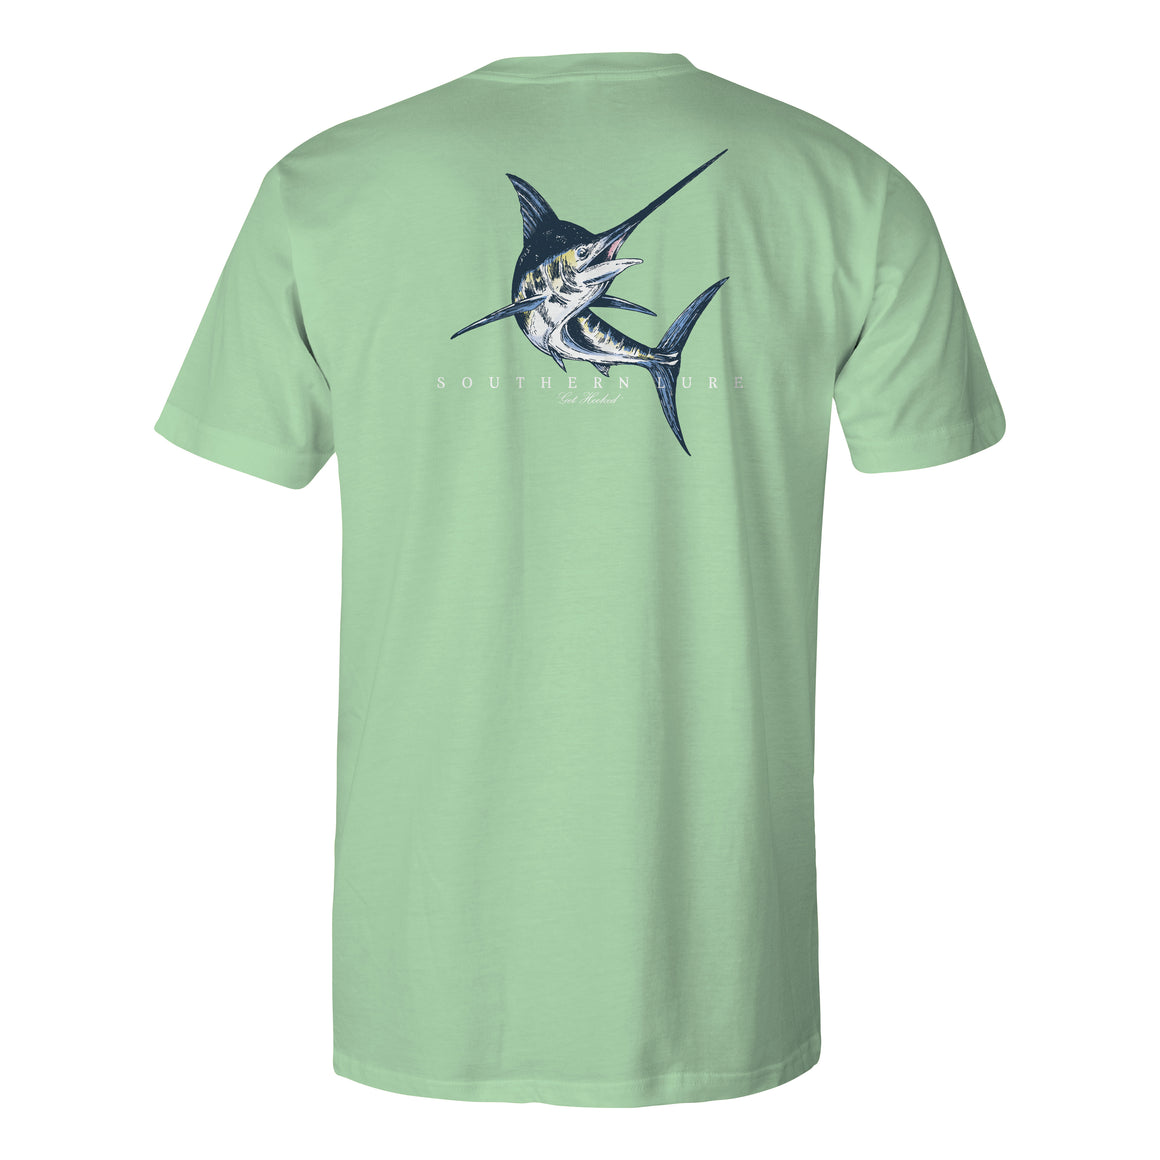 Men's Short Sleeve Tee Shirt - Classic Marlin - Mint